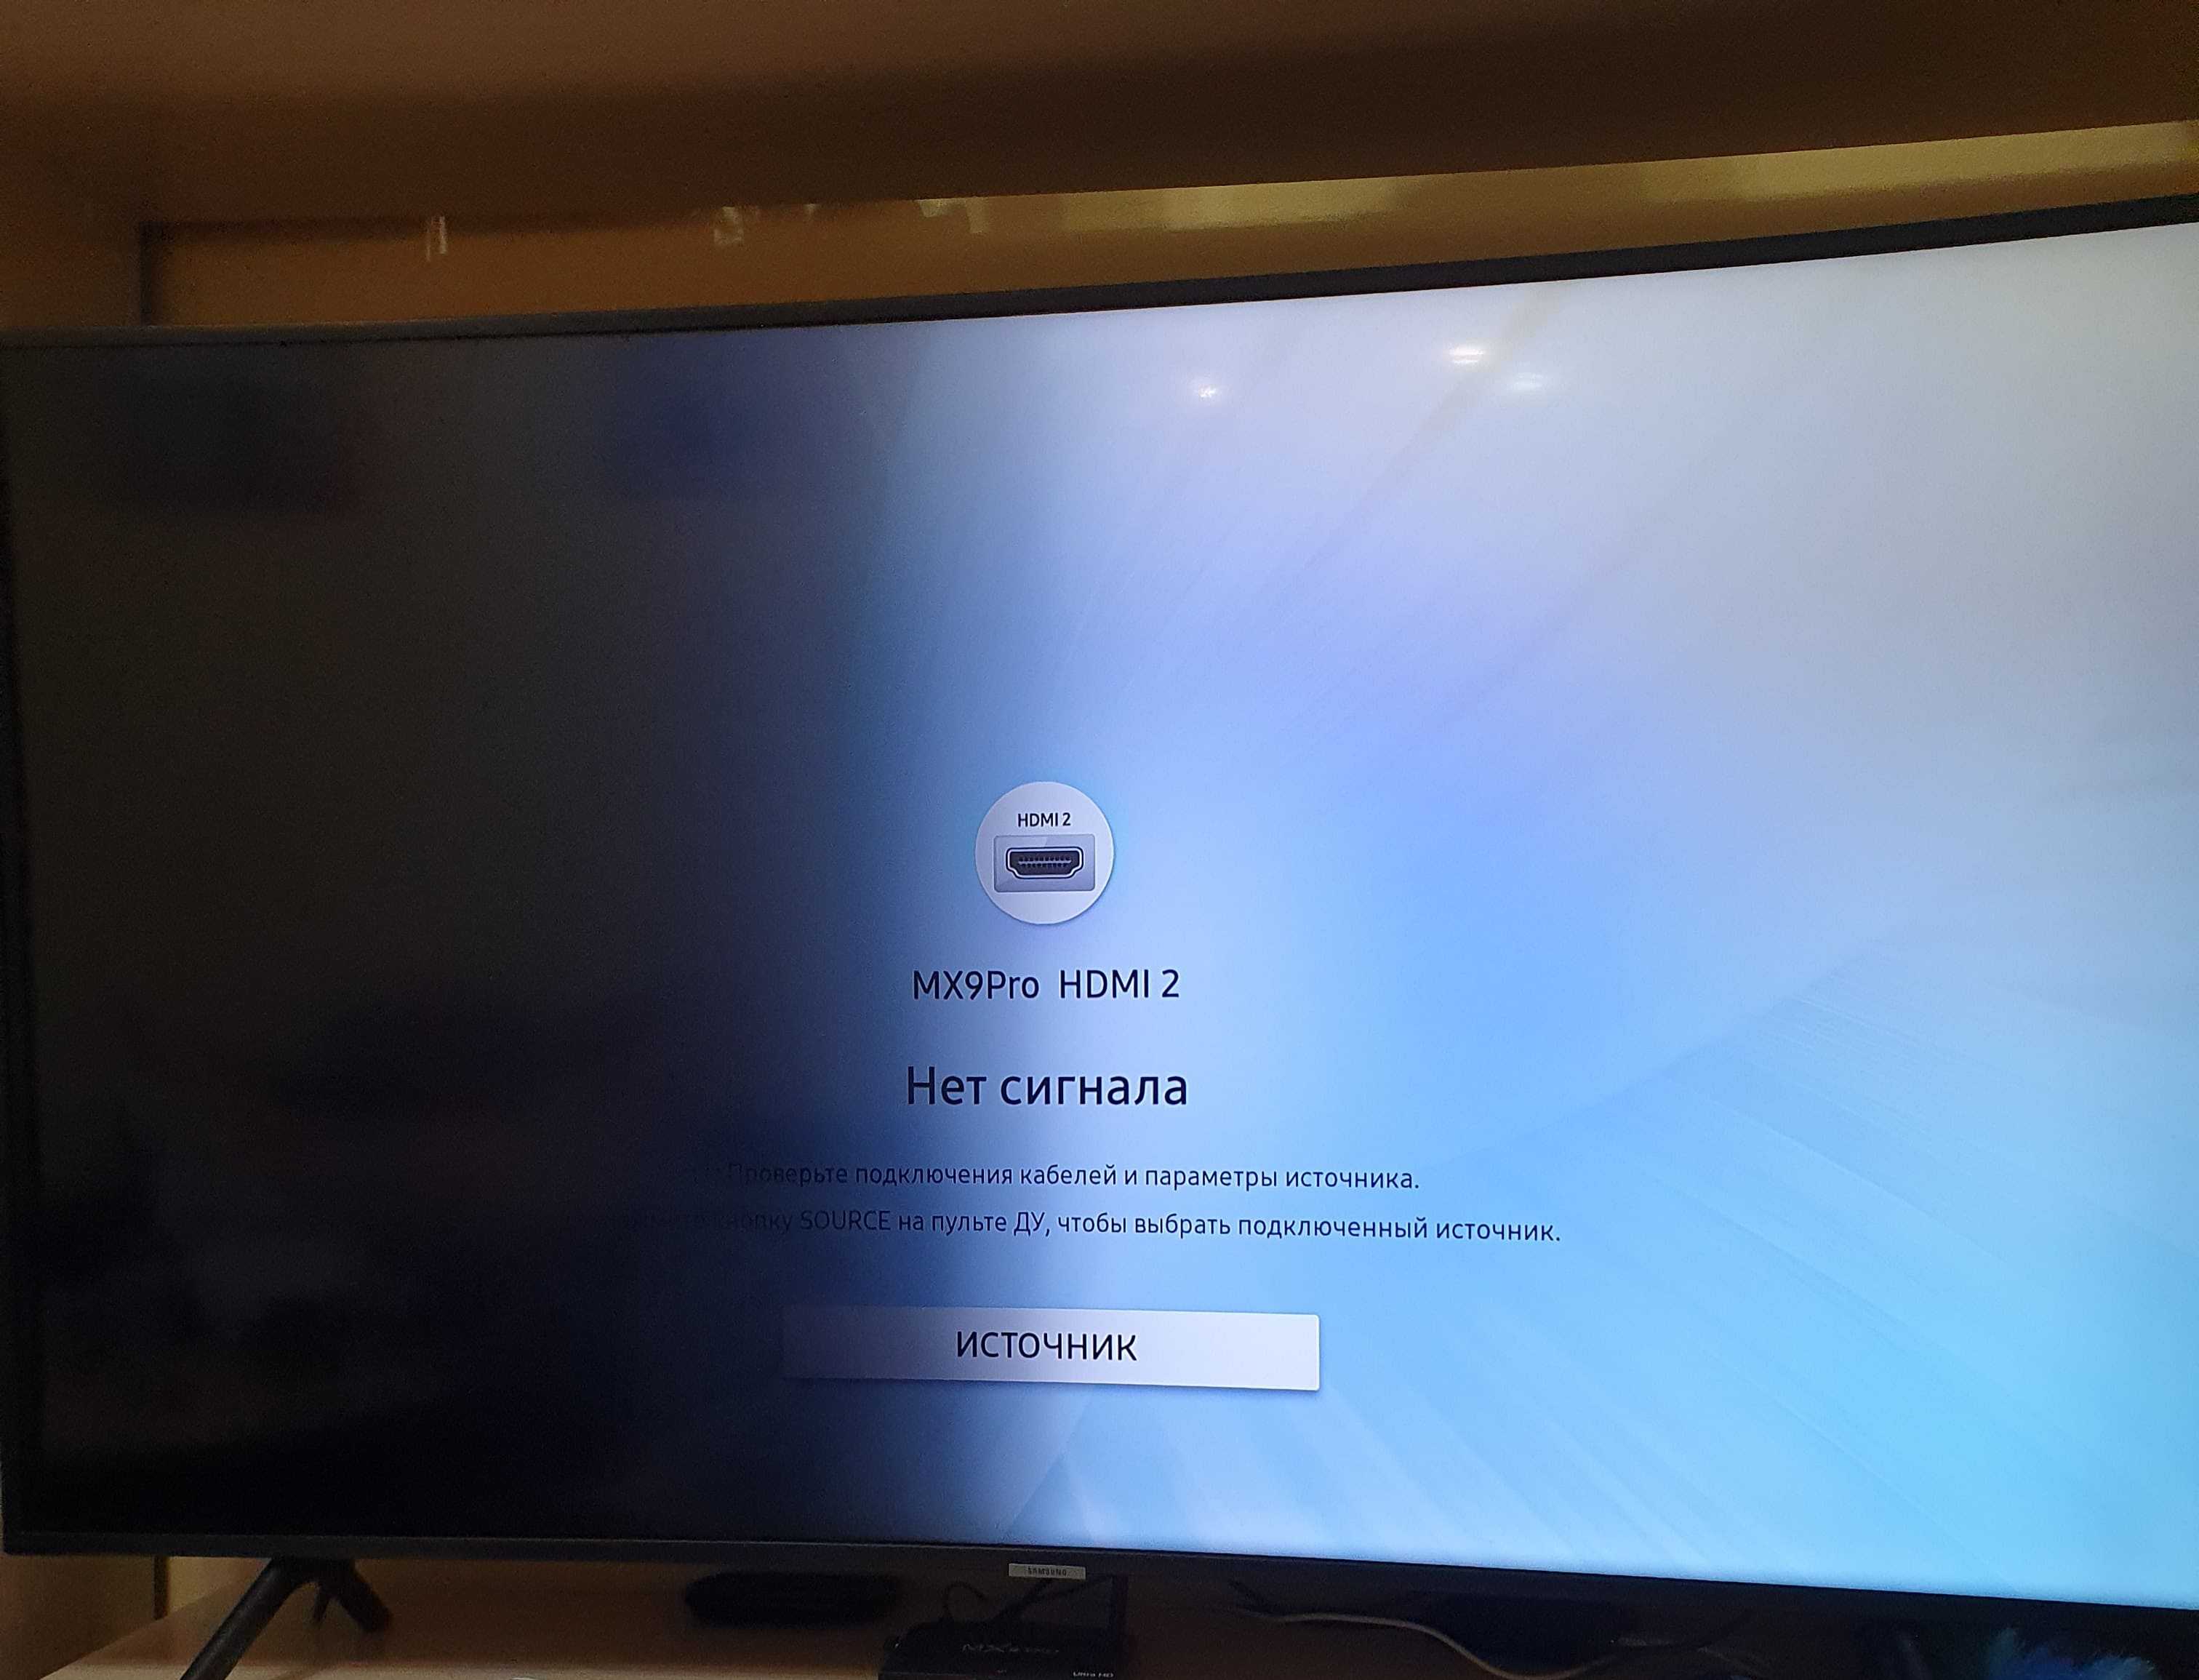 Телевизор нет изображения что может быть. Телевизор Samsung ue49nu7170u. Телевизор самсунг ue49nu7170u. Часть экрана телевизора потемнела. Потемнение на экране телевизора.